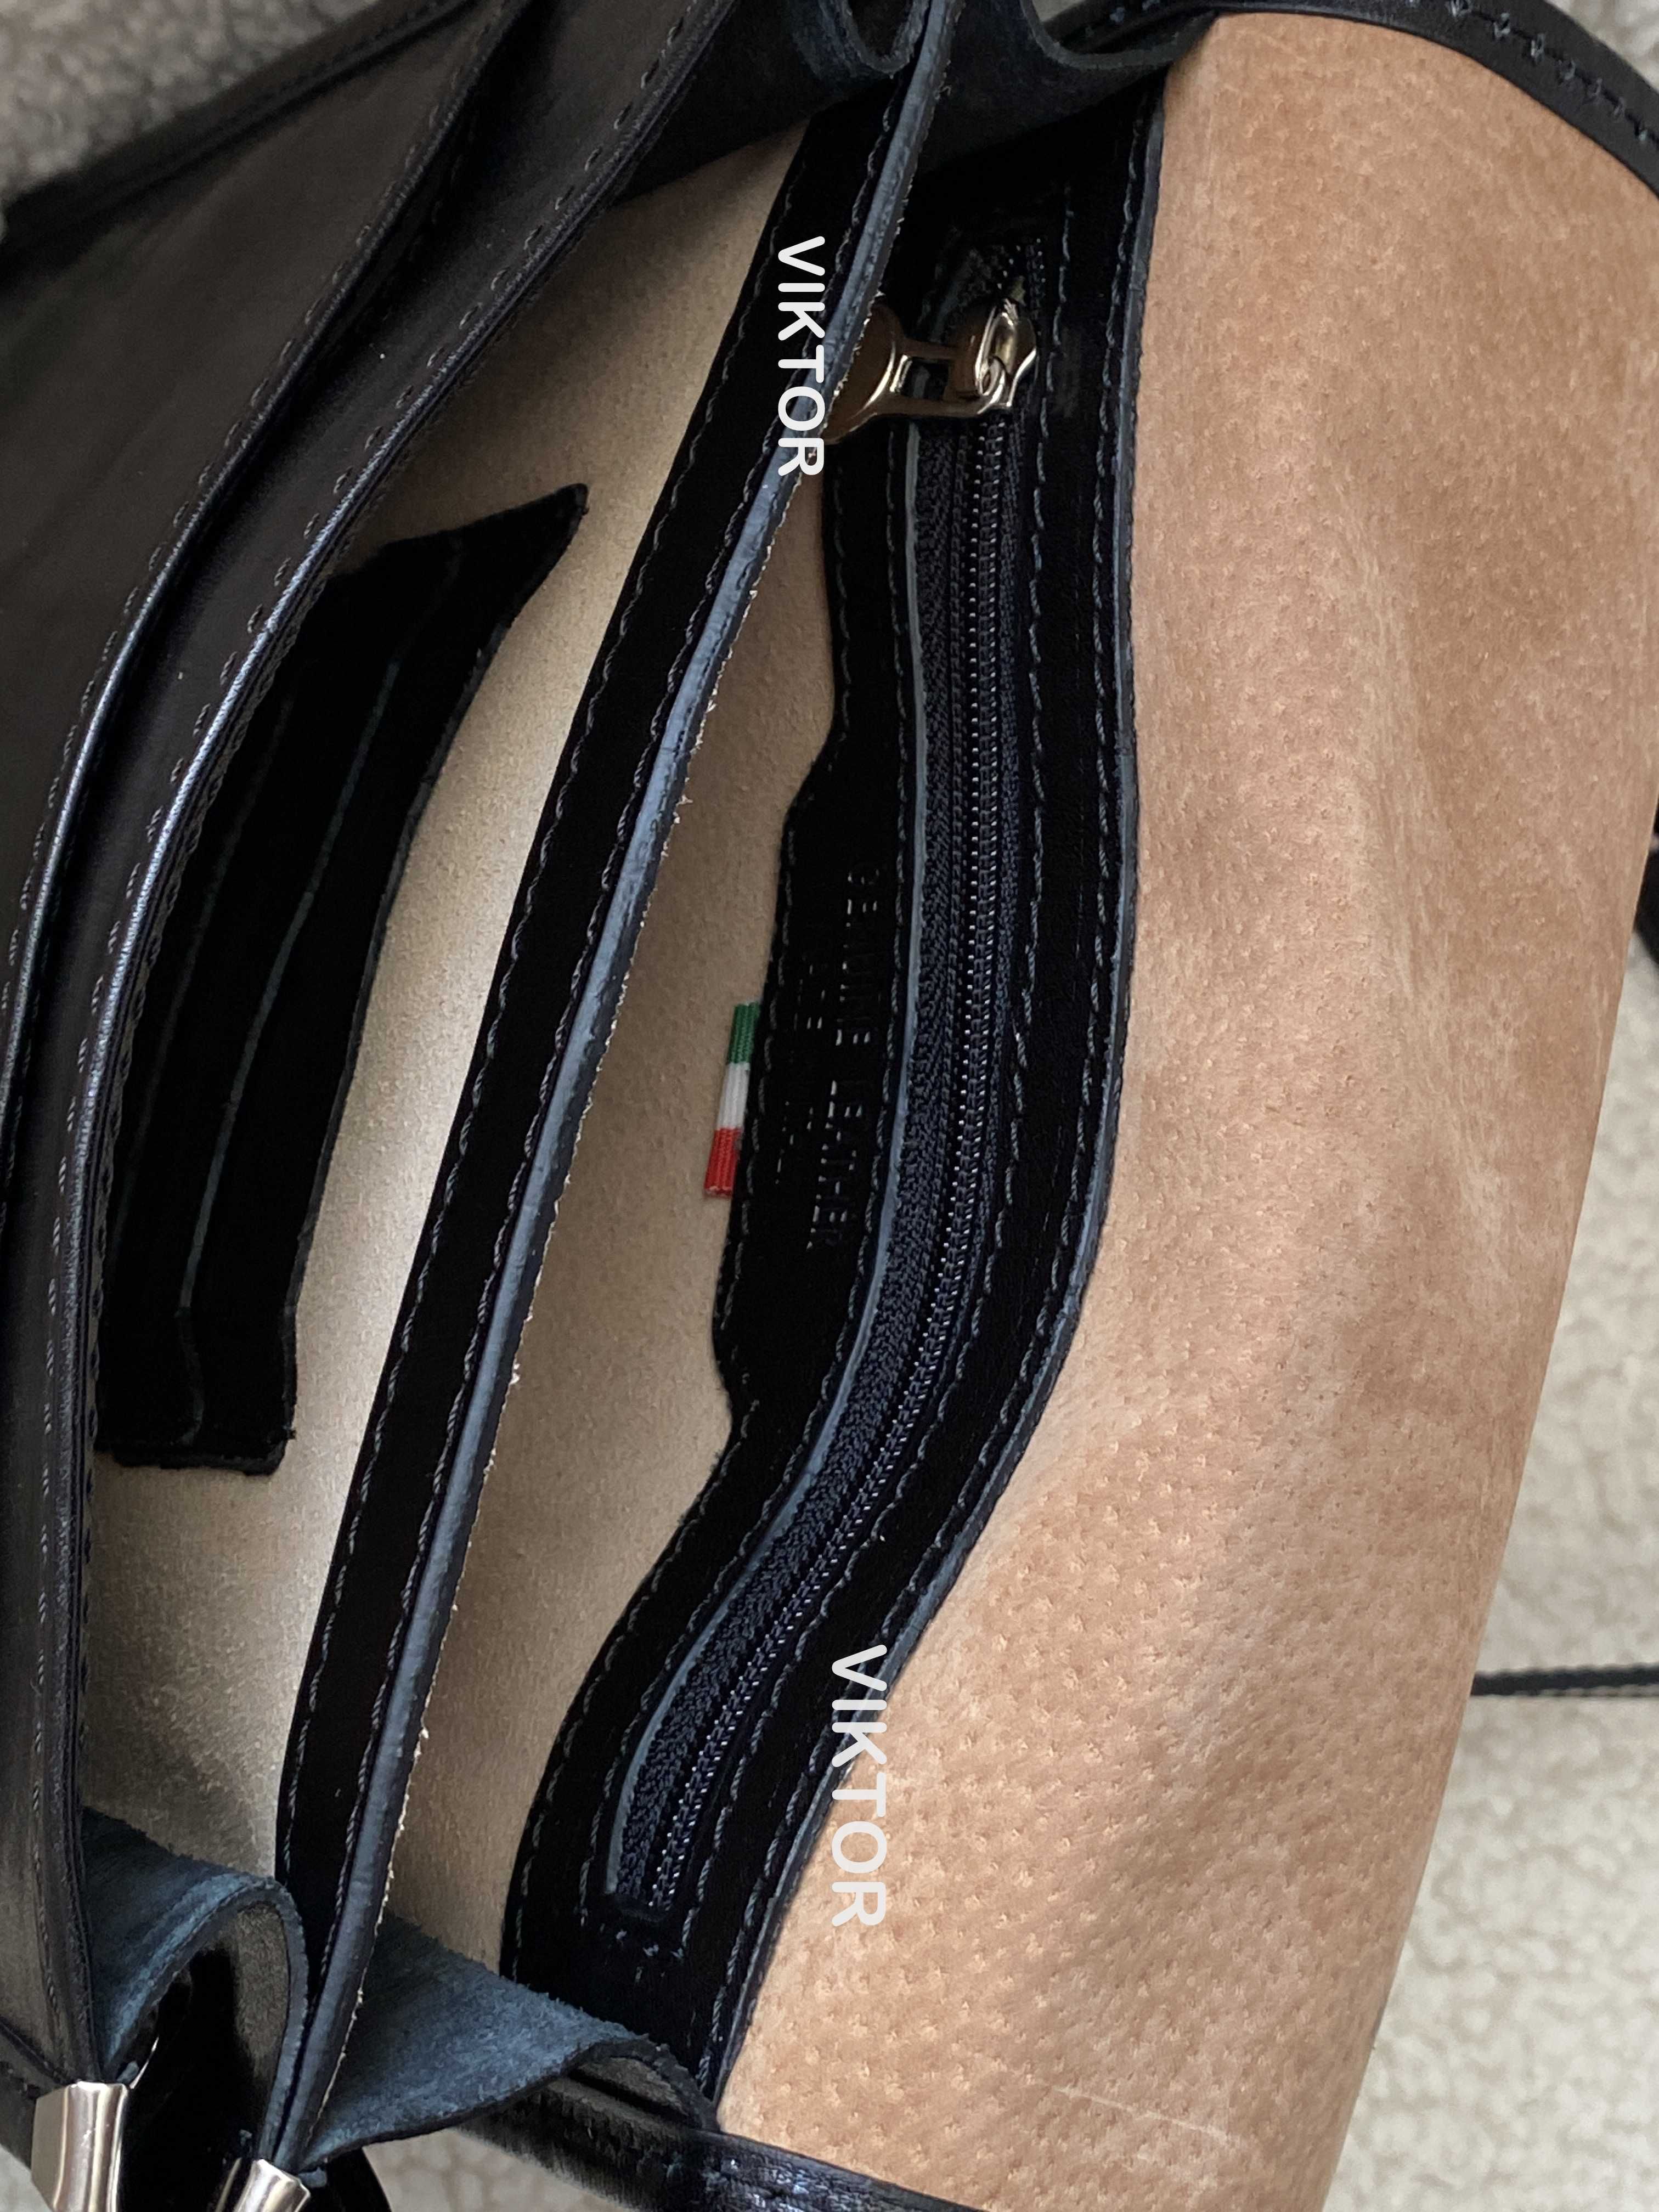 Мужская кожаная сумка-планшет с клапаном VERA PELLE. Италия.